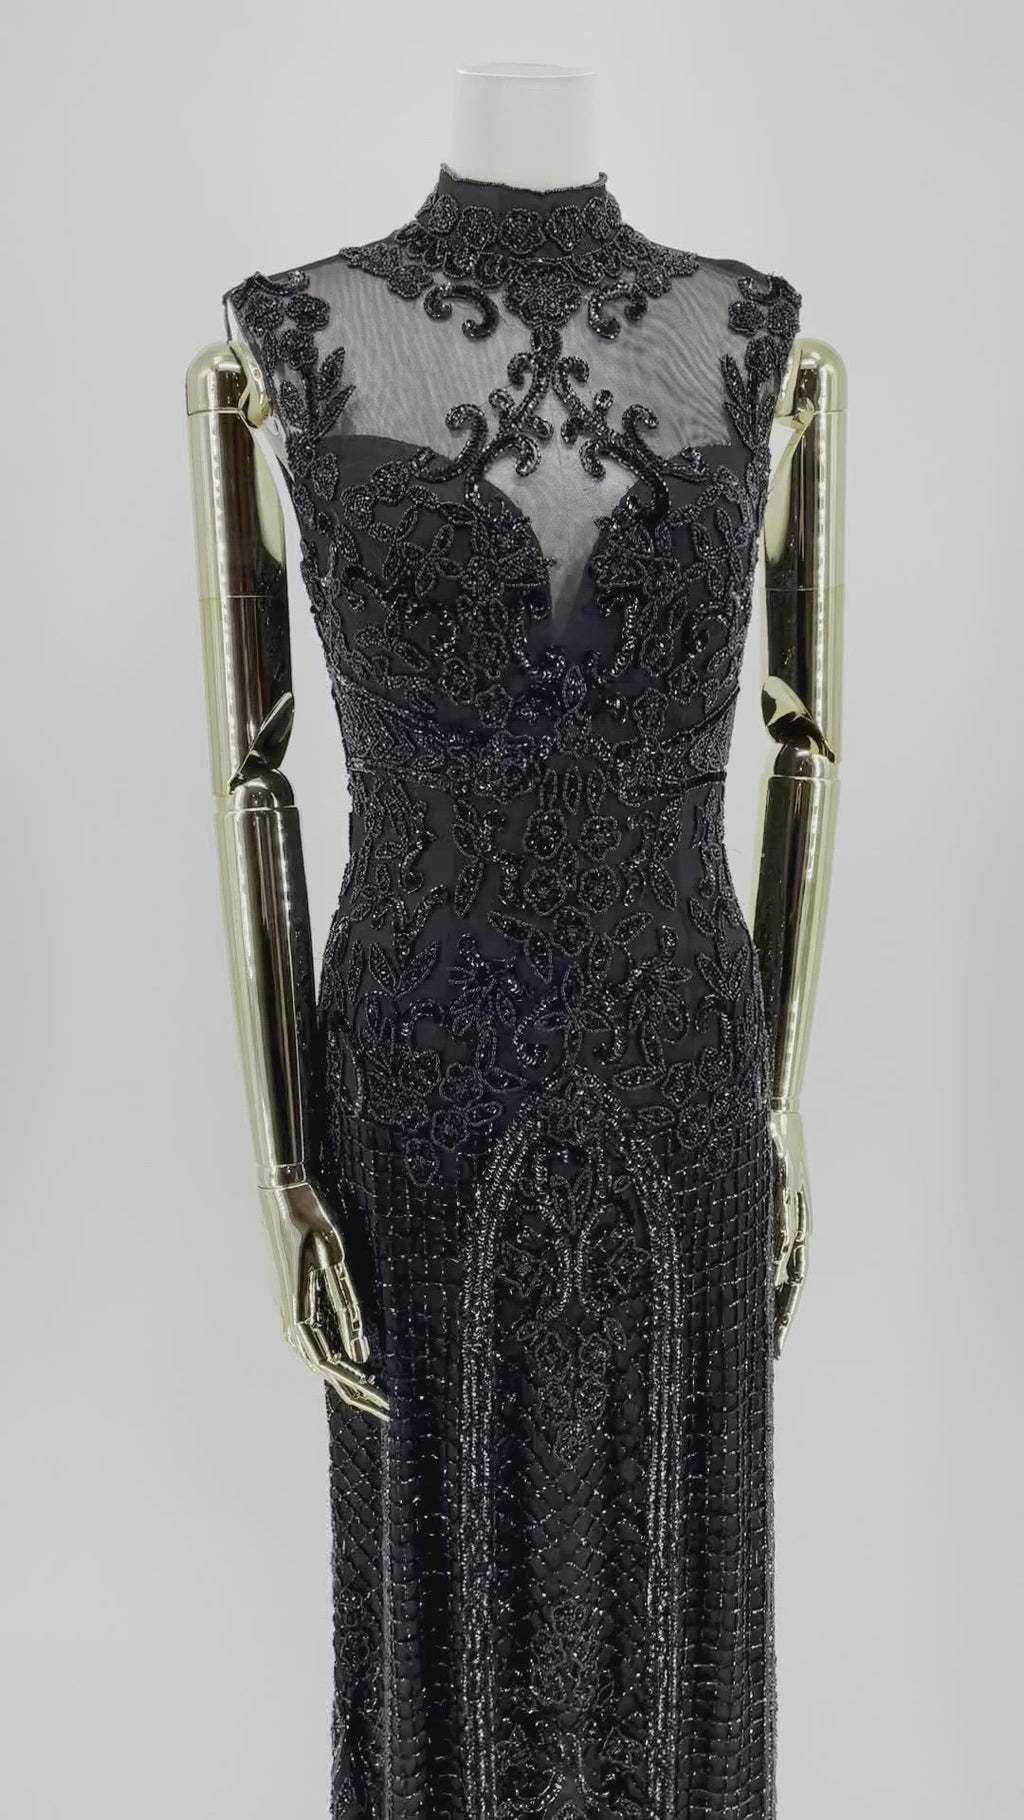 Detaljeret nærbillede af Natskygge Elegance Gallakjole, fokus på det fine håndarbejde og de eksklusive detaljer, der definerer kjolens luksuriøse æstetik.